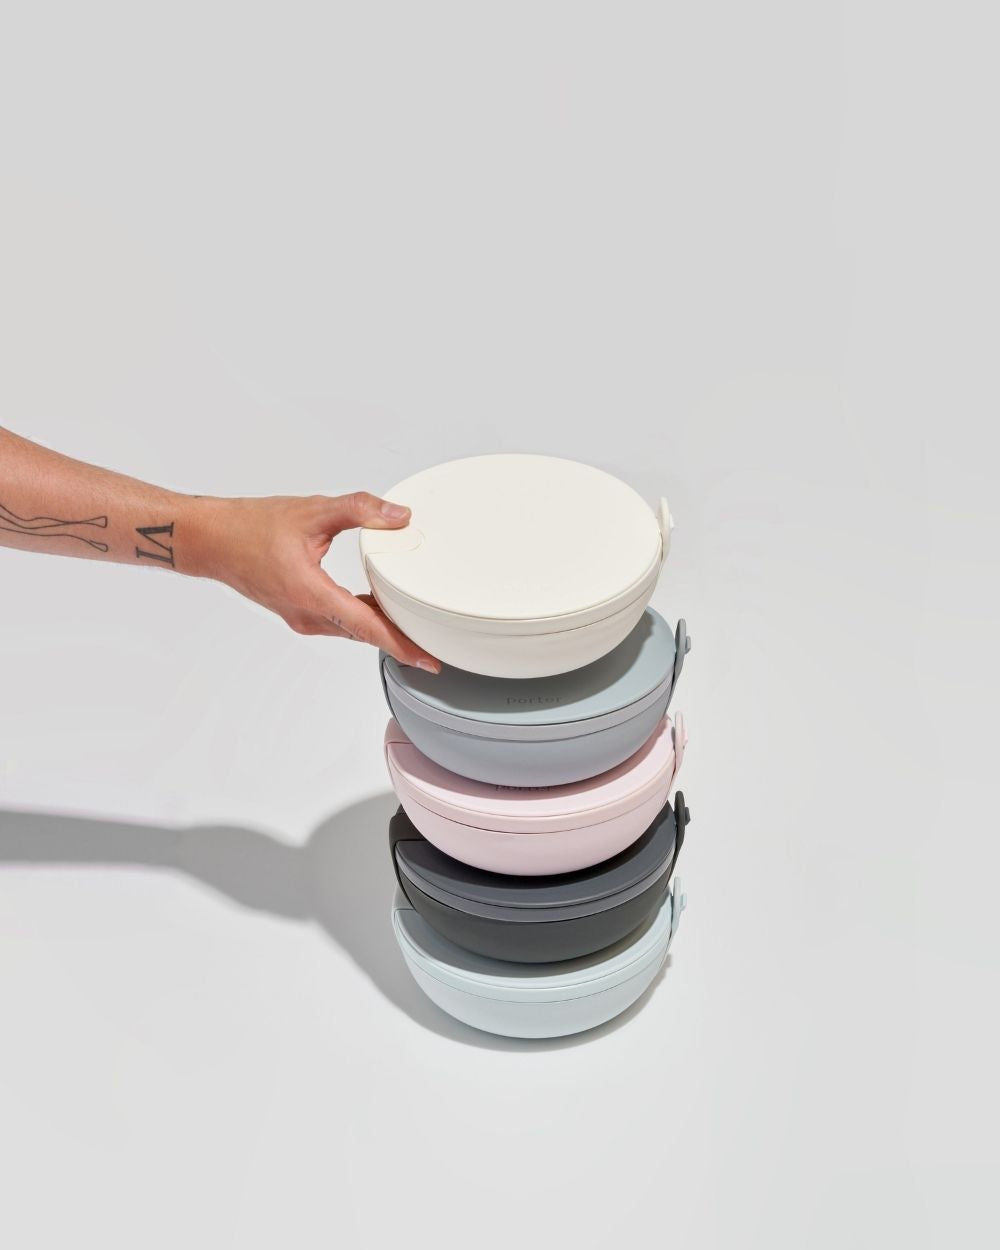 Make & Take Lunch Bowl - Ceramic